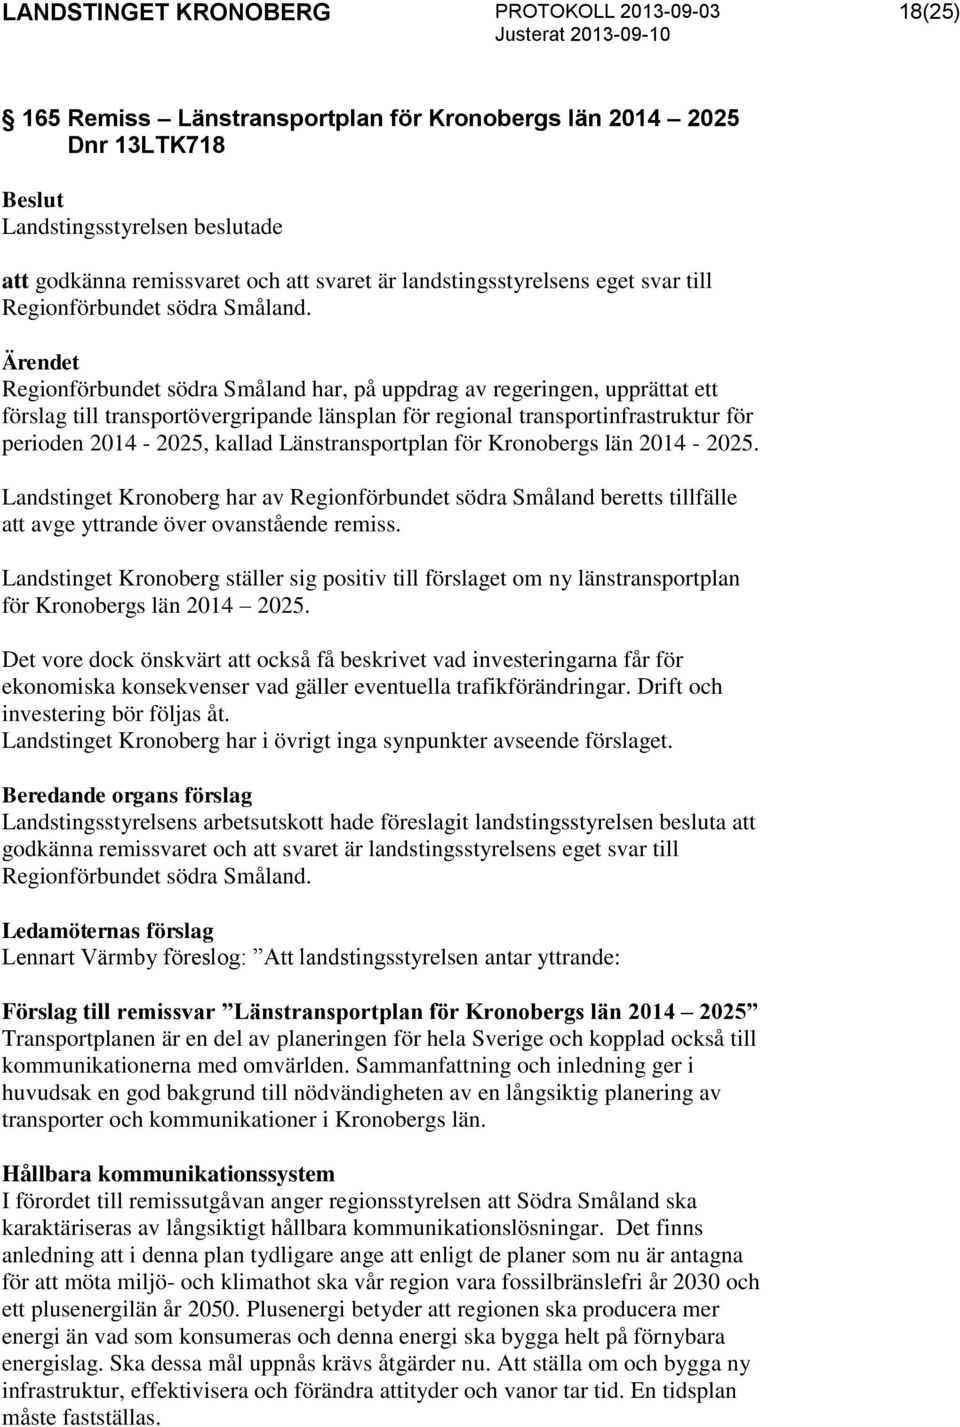 Länstransportplan för Kronobergs län 2014-2025. Landstinget Kronoberg har av Regionförbundet södra Småland beretts tillfälle att avge yttrande över ovanstående remiss.